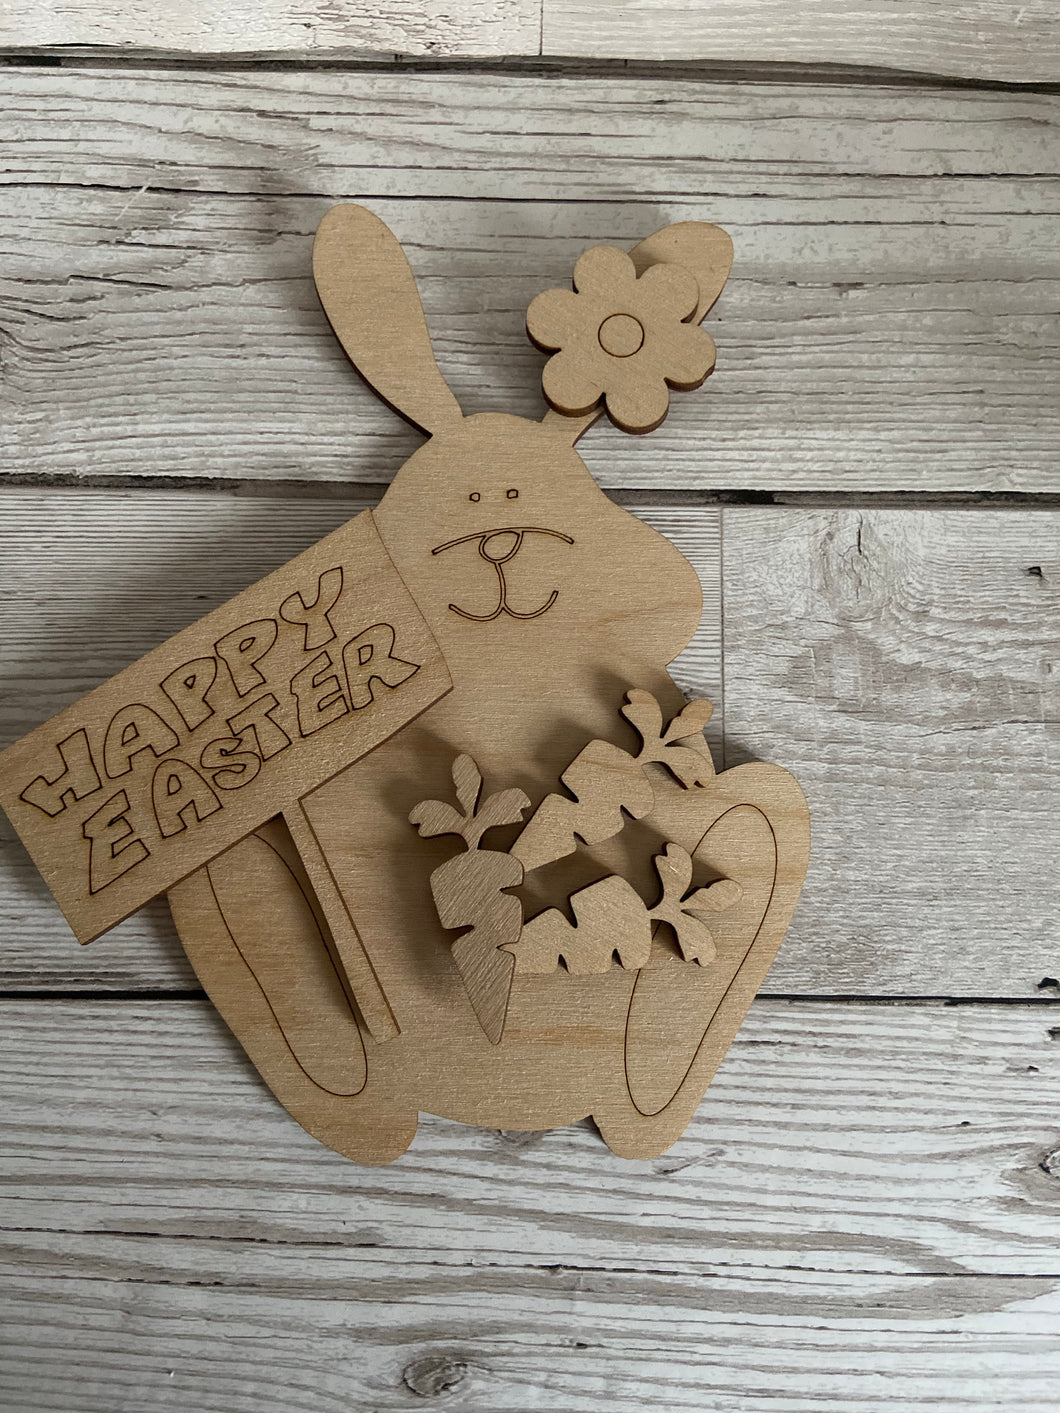 Wooden bunny with happy Easter plaque - Laser LLama Designs Ltd